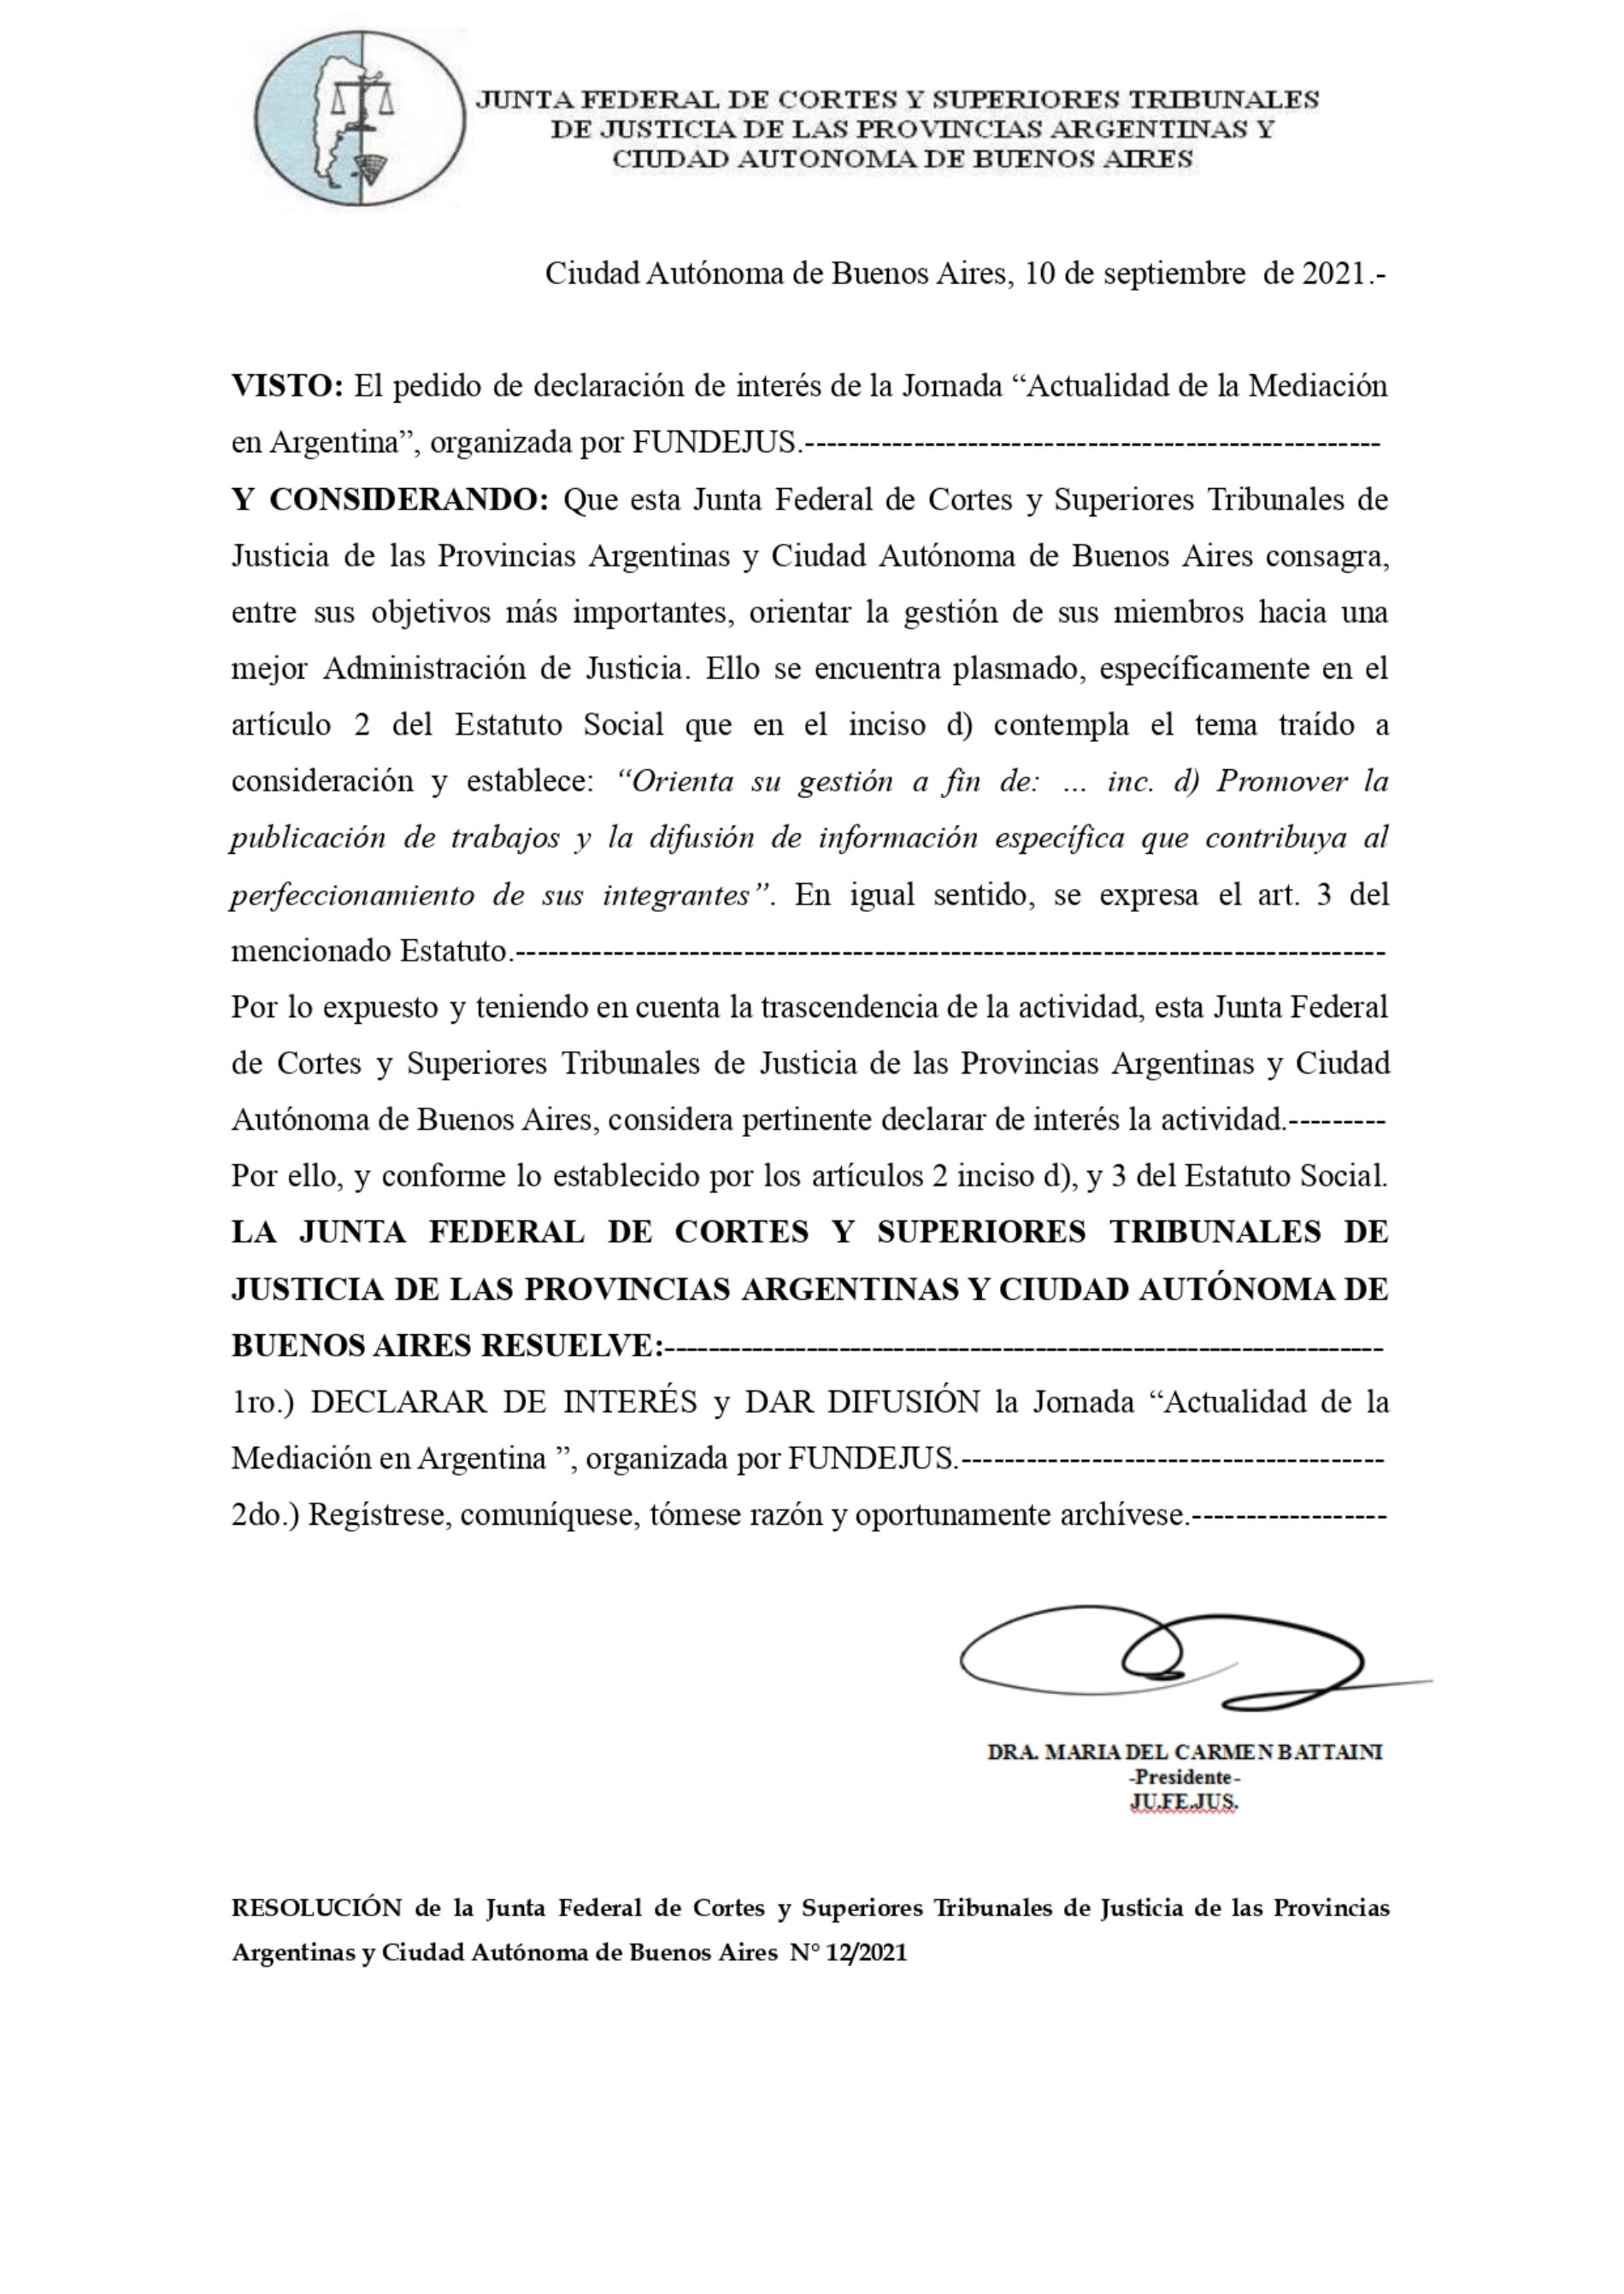 Declaración de interés: JU.FE.JUS (Res. 12/2021) – Actividad: “Actualidad de la Mediación en Argentina”